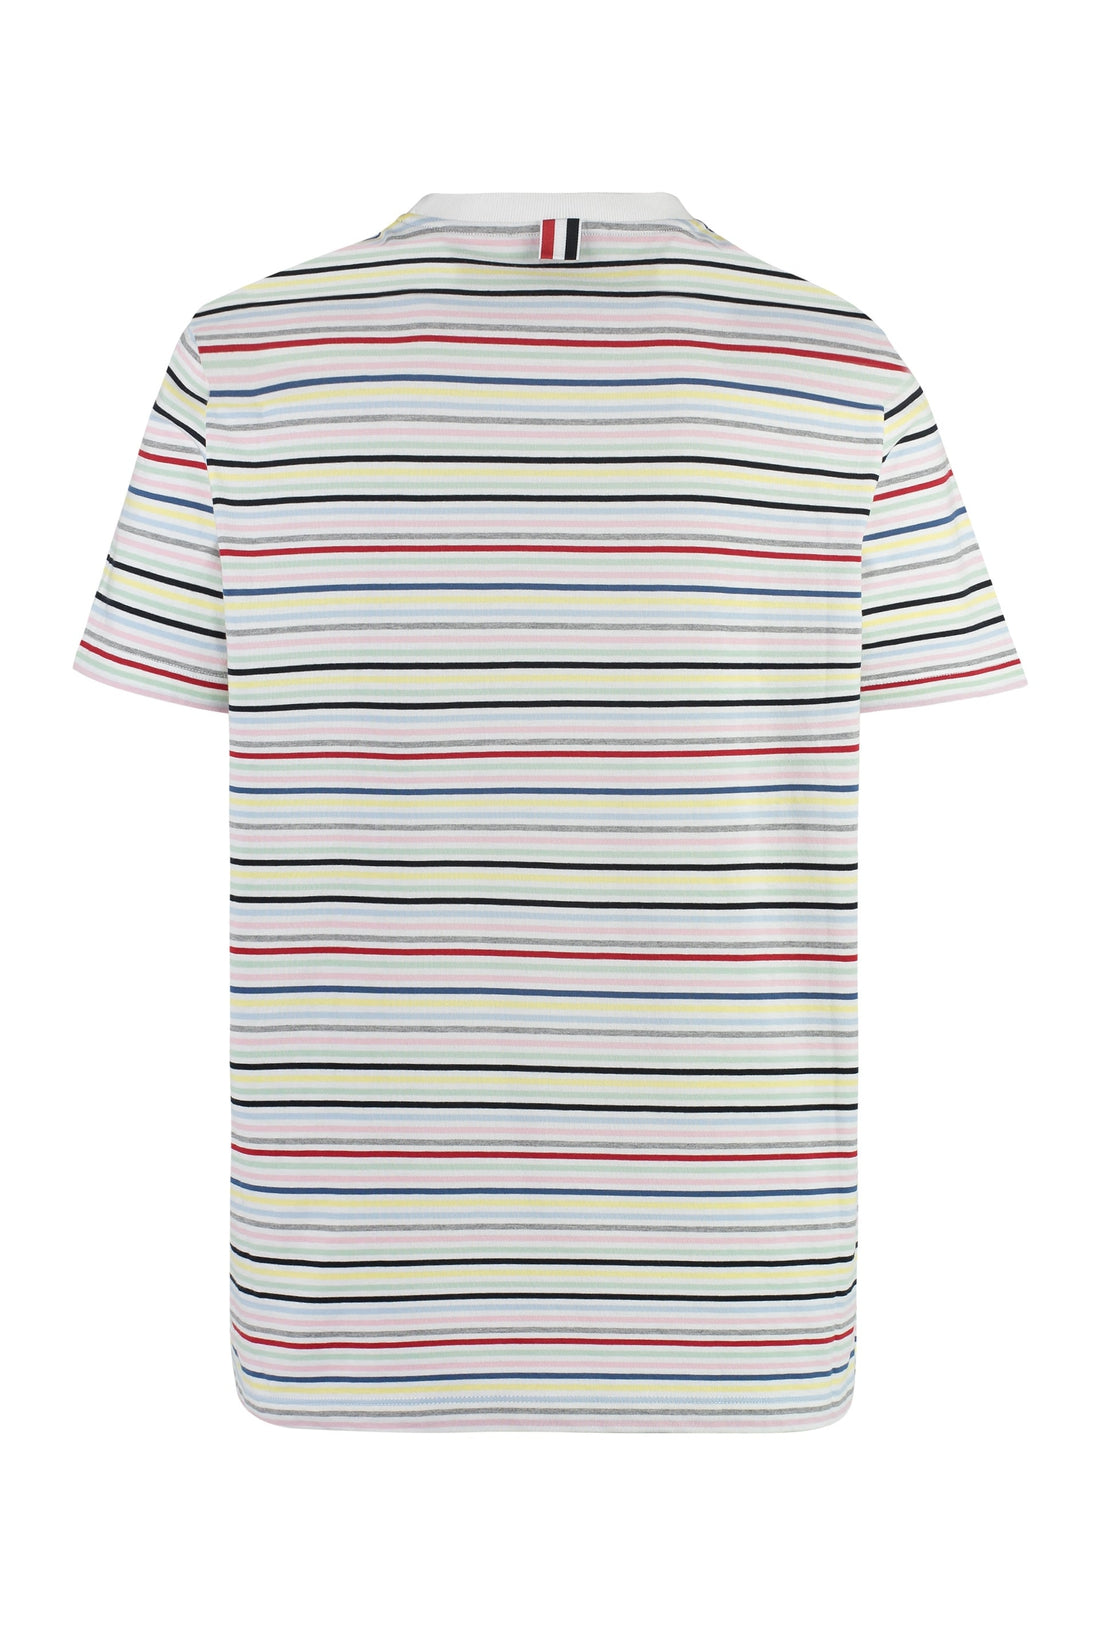 Thom Browne-OUTLET-SALE-Striped cotton T-shirt-ARCHIVIST